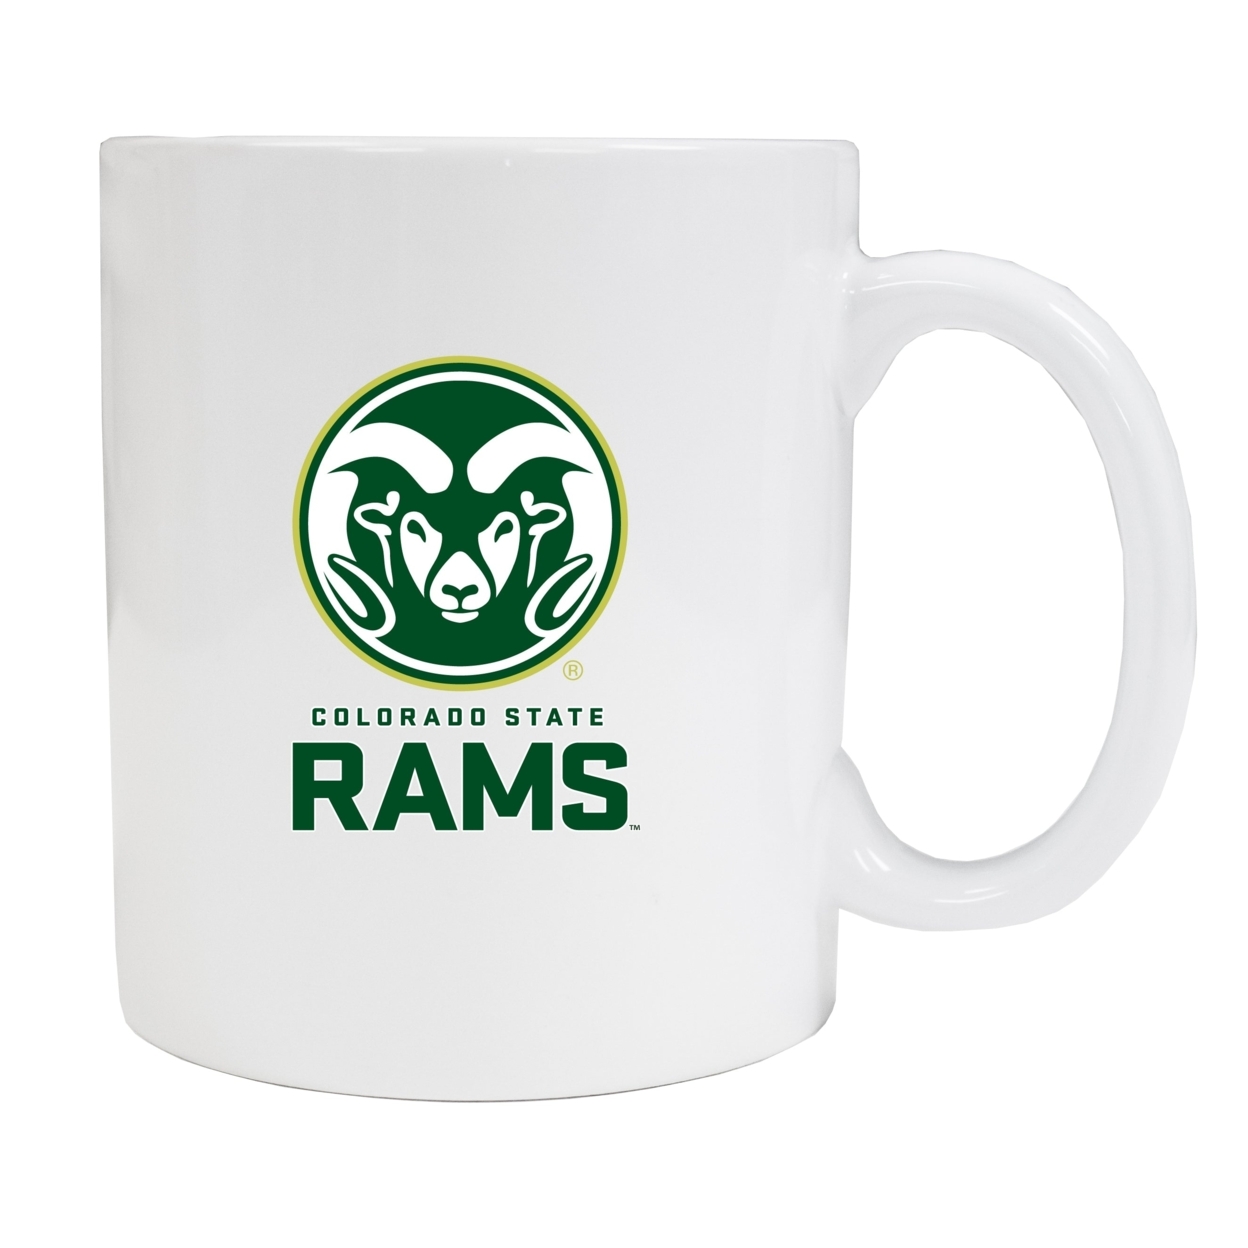 Colorado State Rams White Ceramic Mug (White).